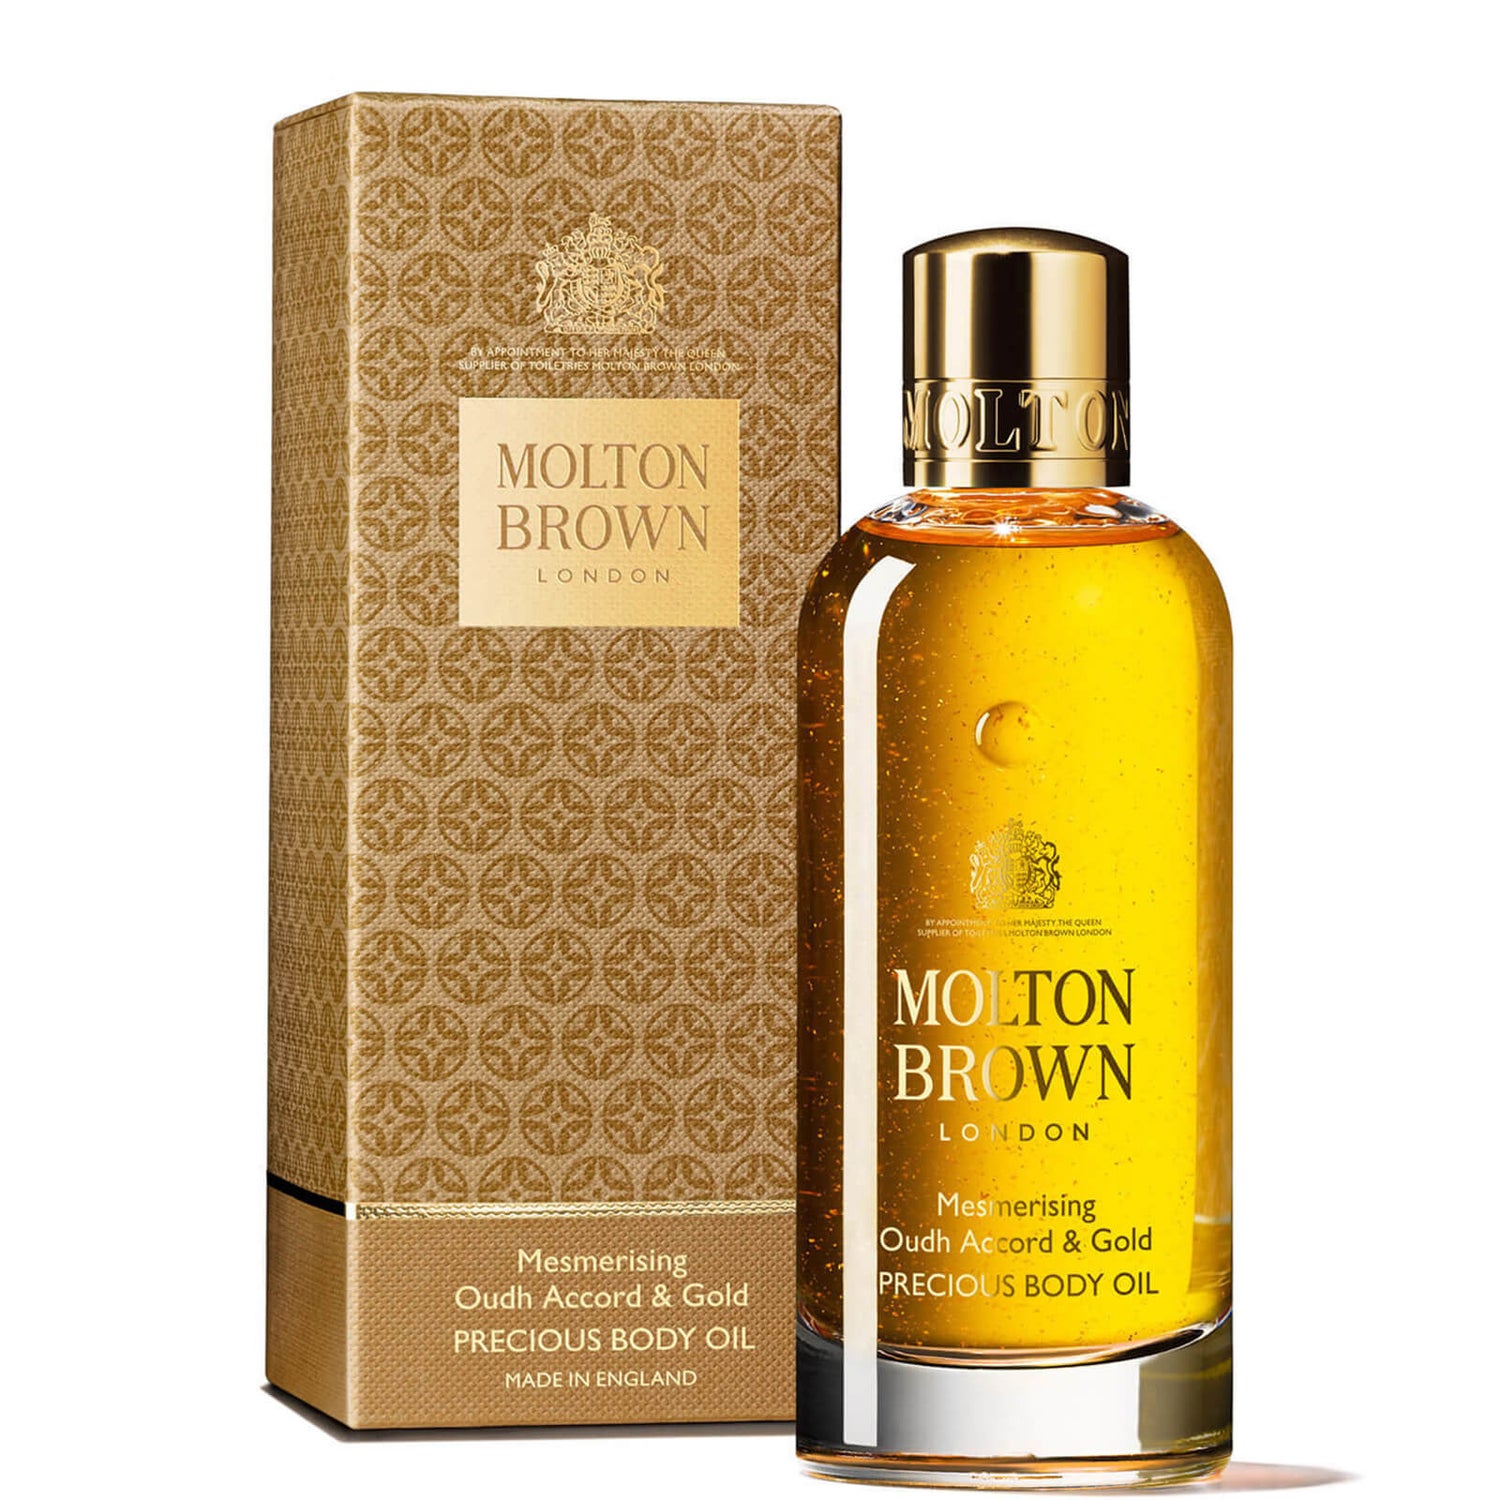 Molton Brown Oudh Accord & Gold Precious Body Oil -vartaloöljy